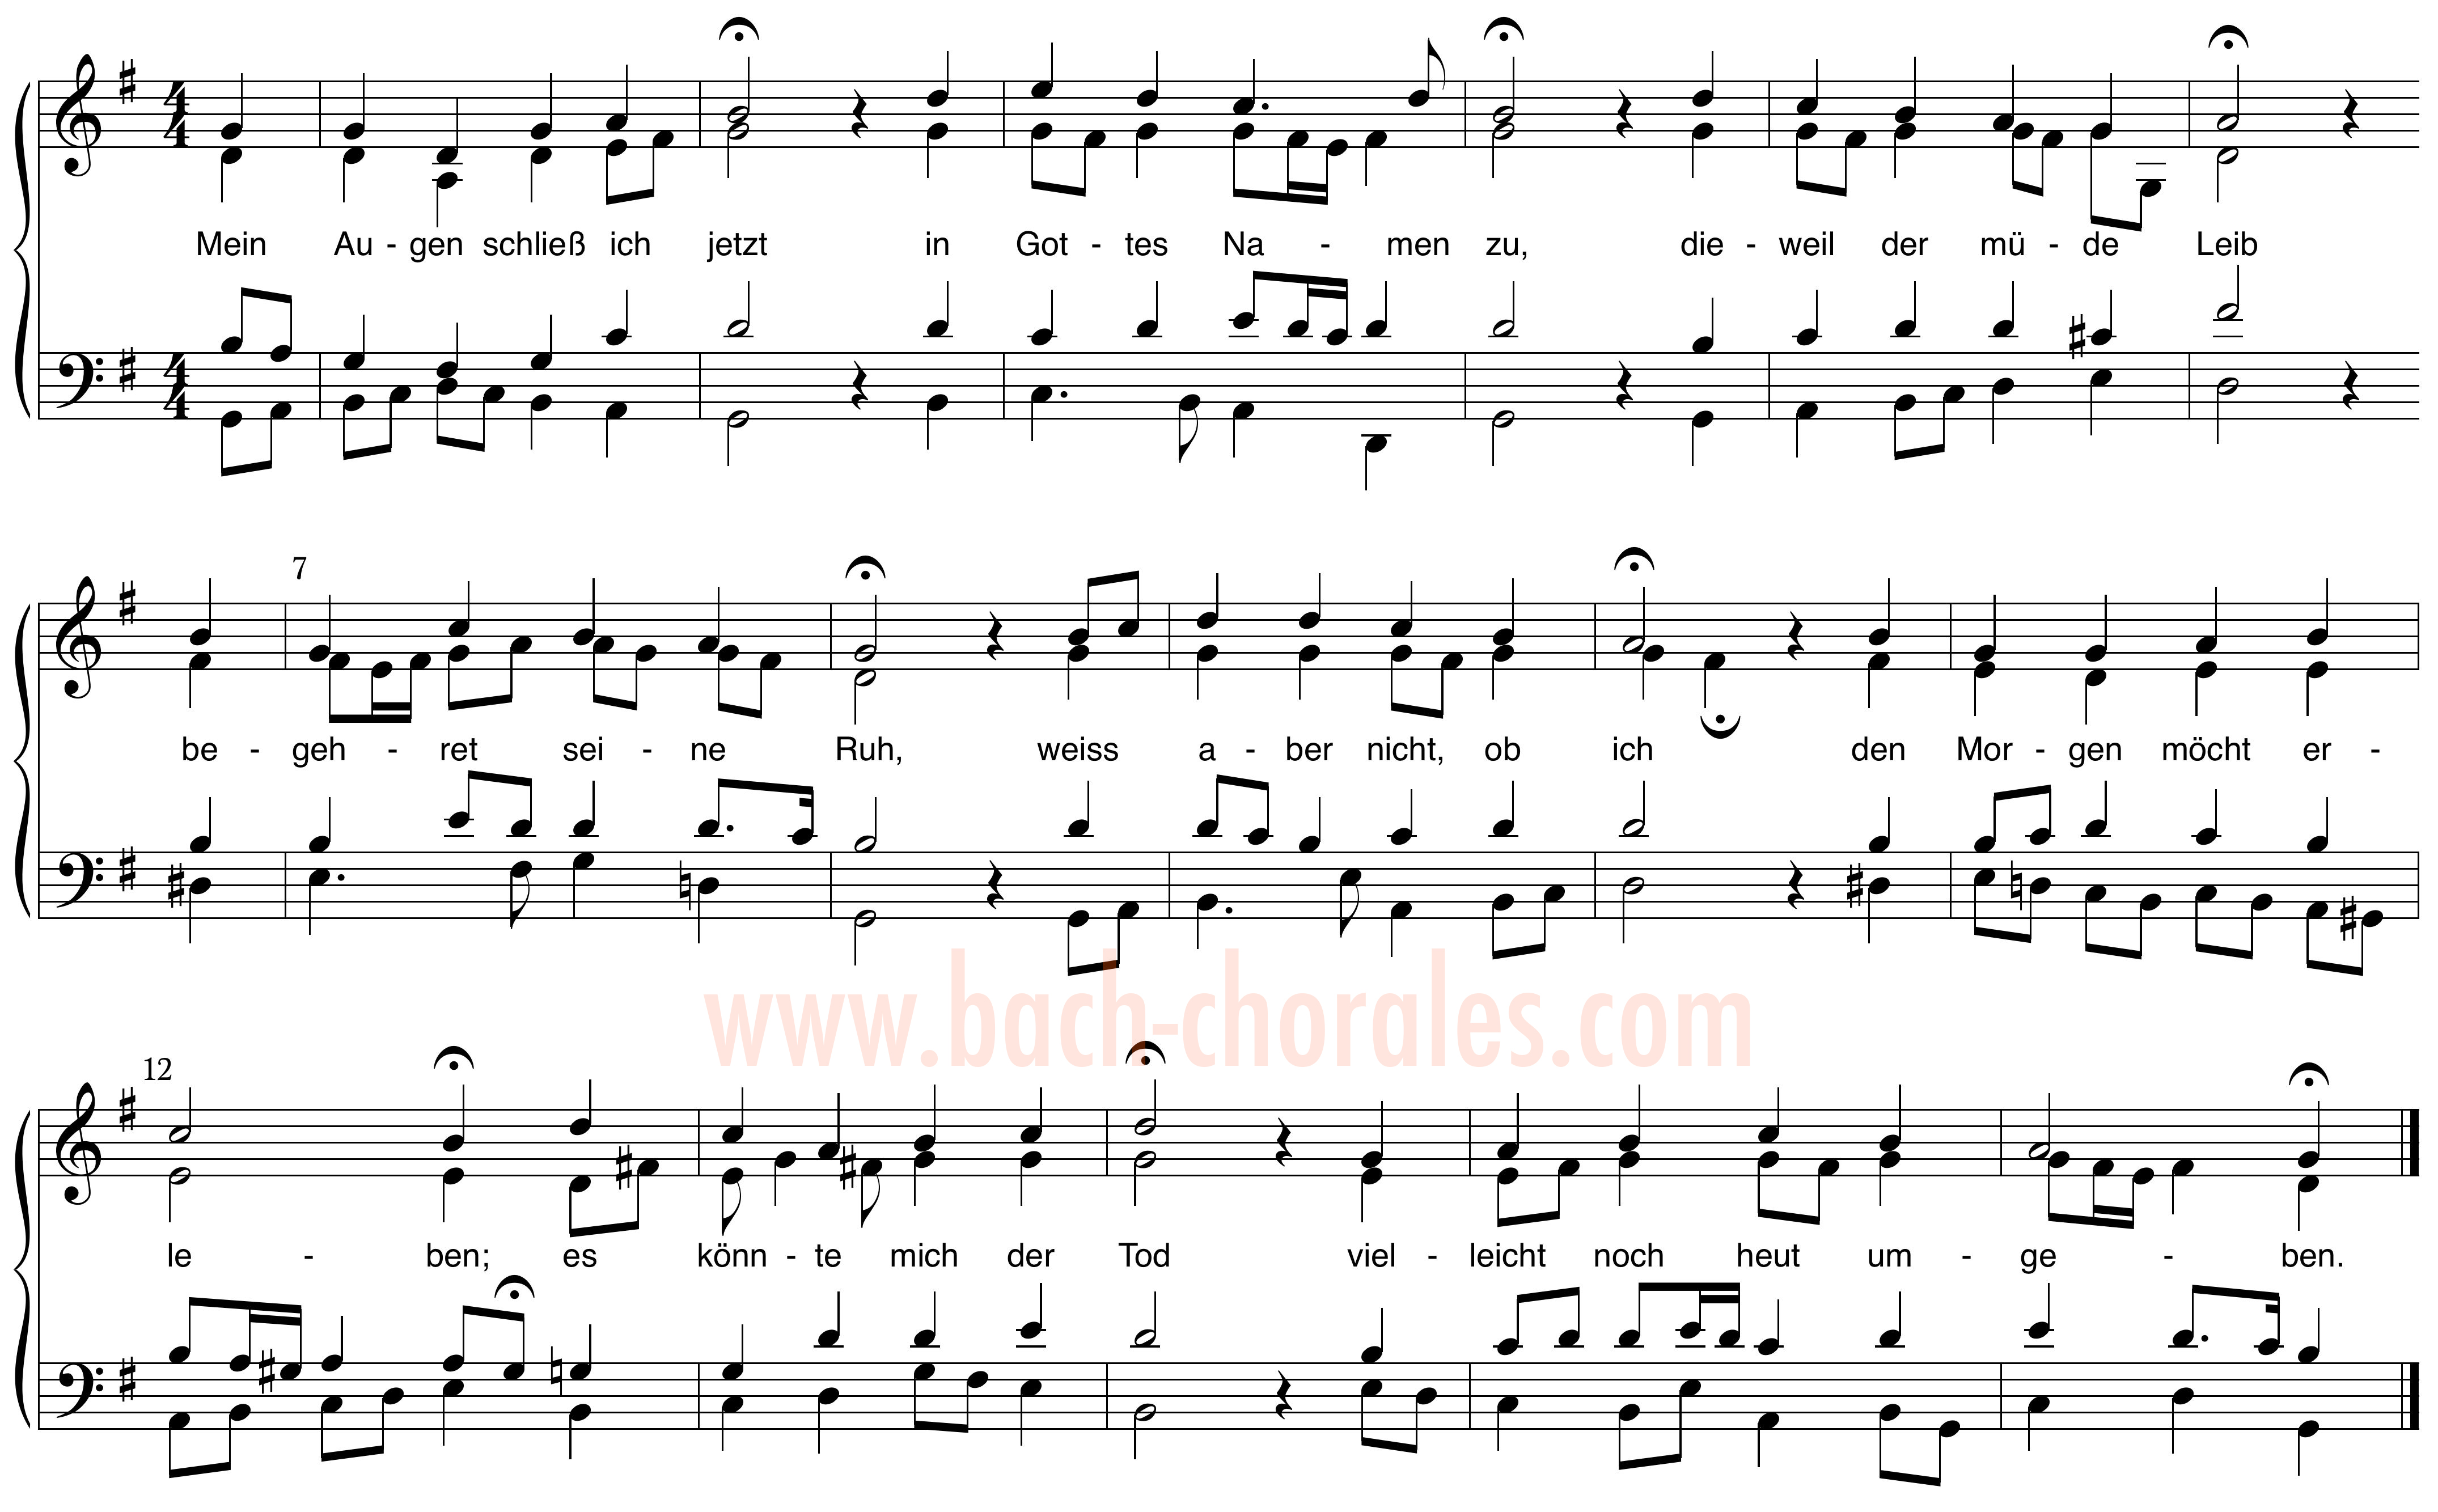 notenbeeld BWV 378 op https://www.bach-chorales.com/